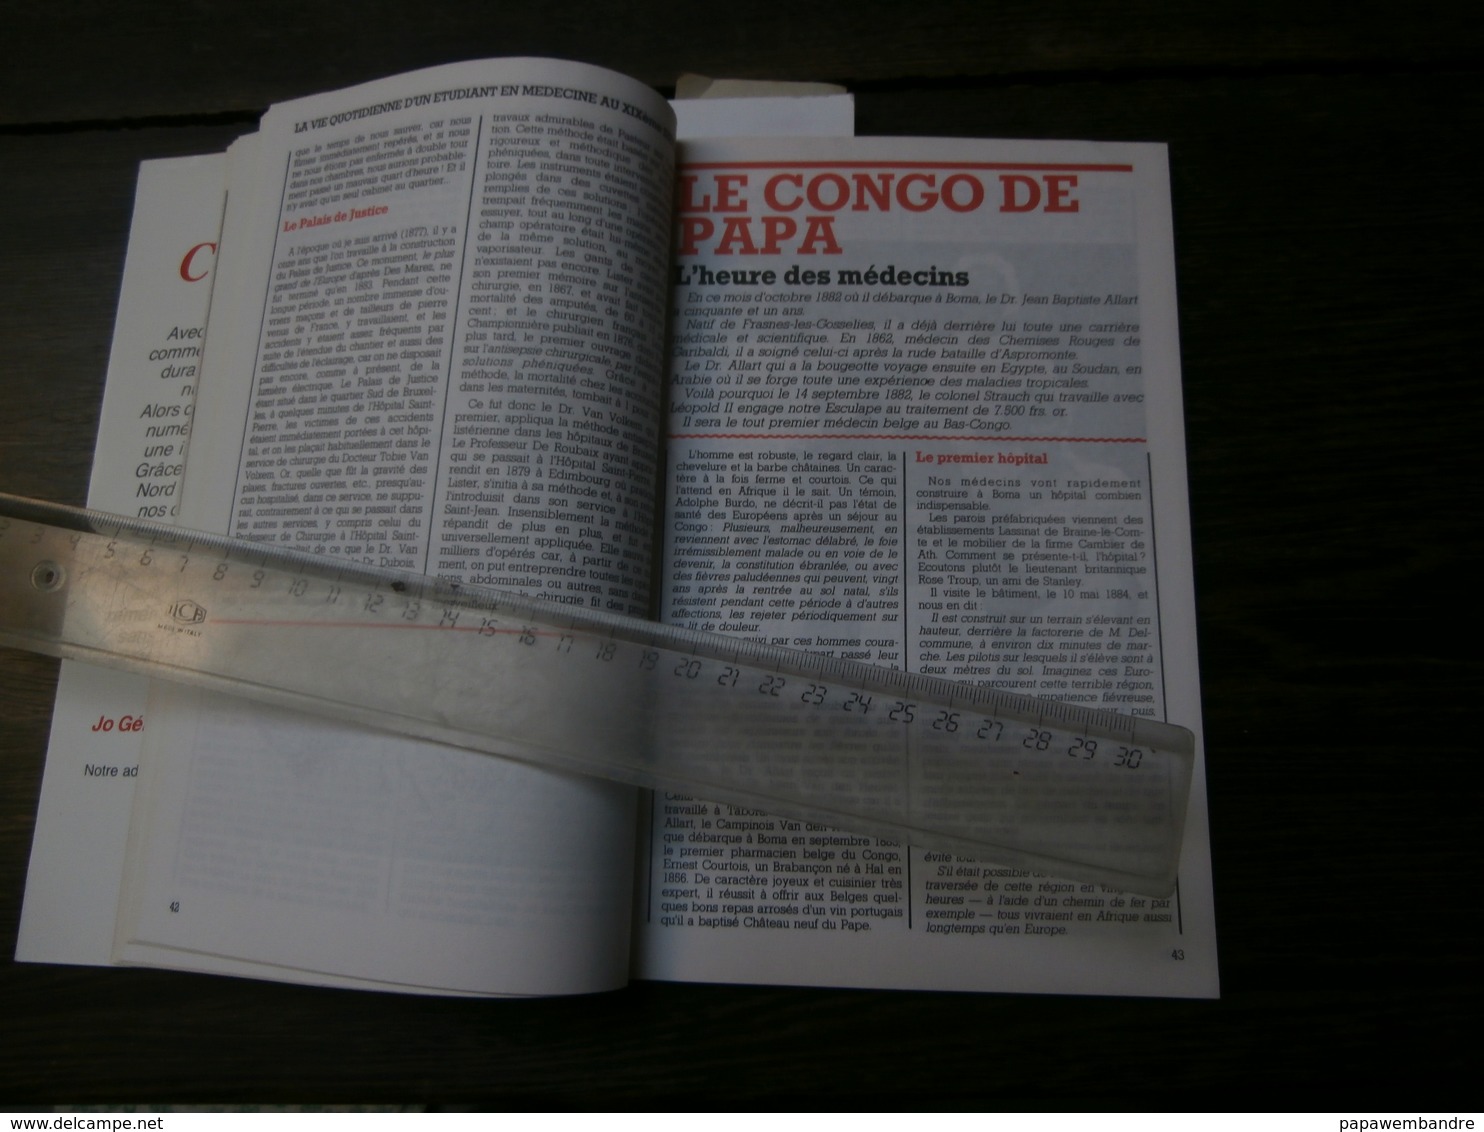 Belgia 2000 N° 9 Juillet 1984 : Congo, Antoine Depage, Antoine Fonck, JB Allart - Histoire